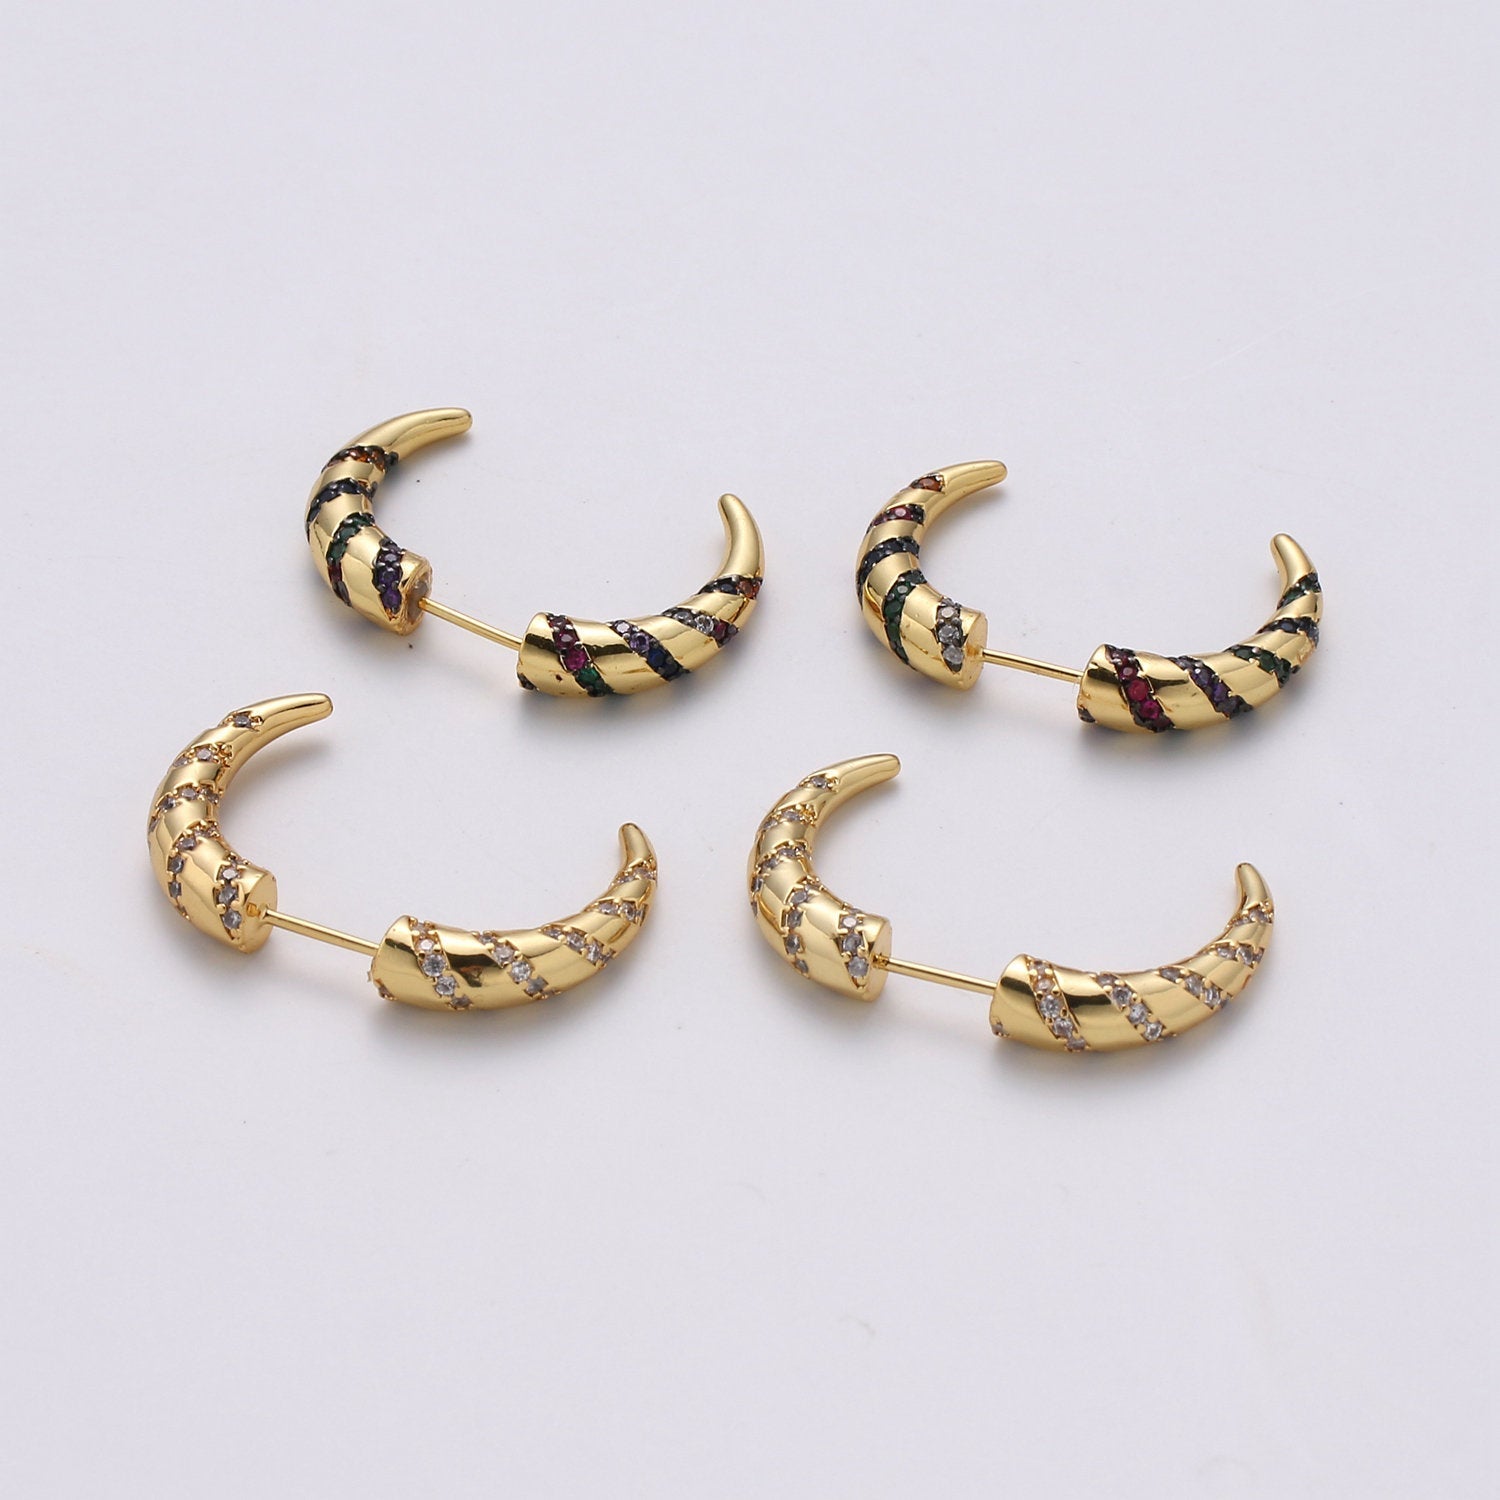 Gold Crescent moon earrings / Horn earrings / Half Moon Earrings / Celestial Stud earrings Micro Pave Earring Boho earrings Gift For Her, 2xSUPP-568 - DLUXCA